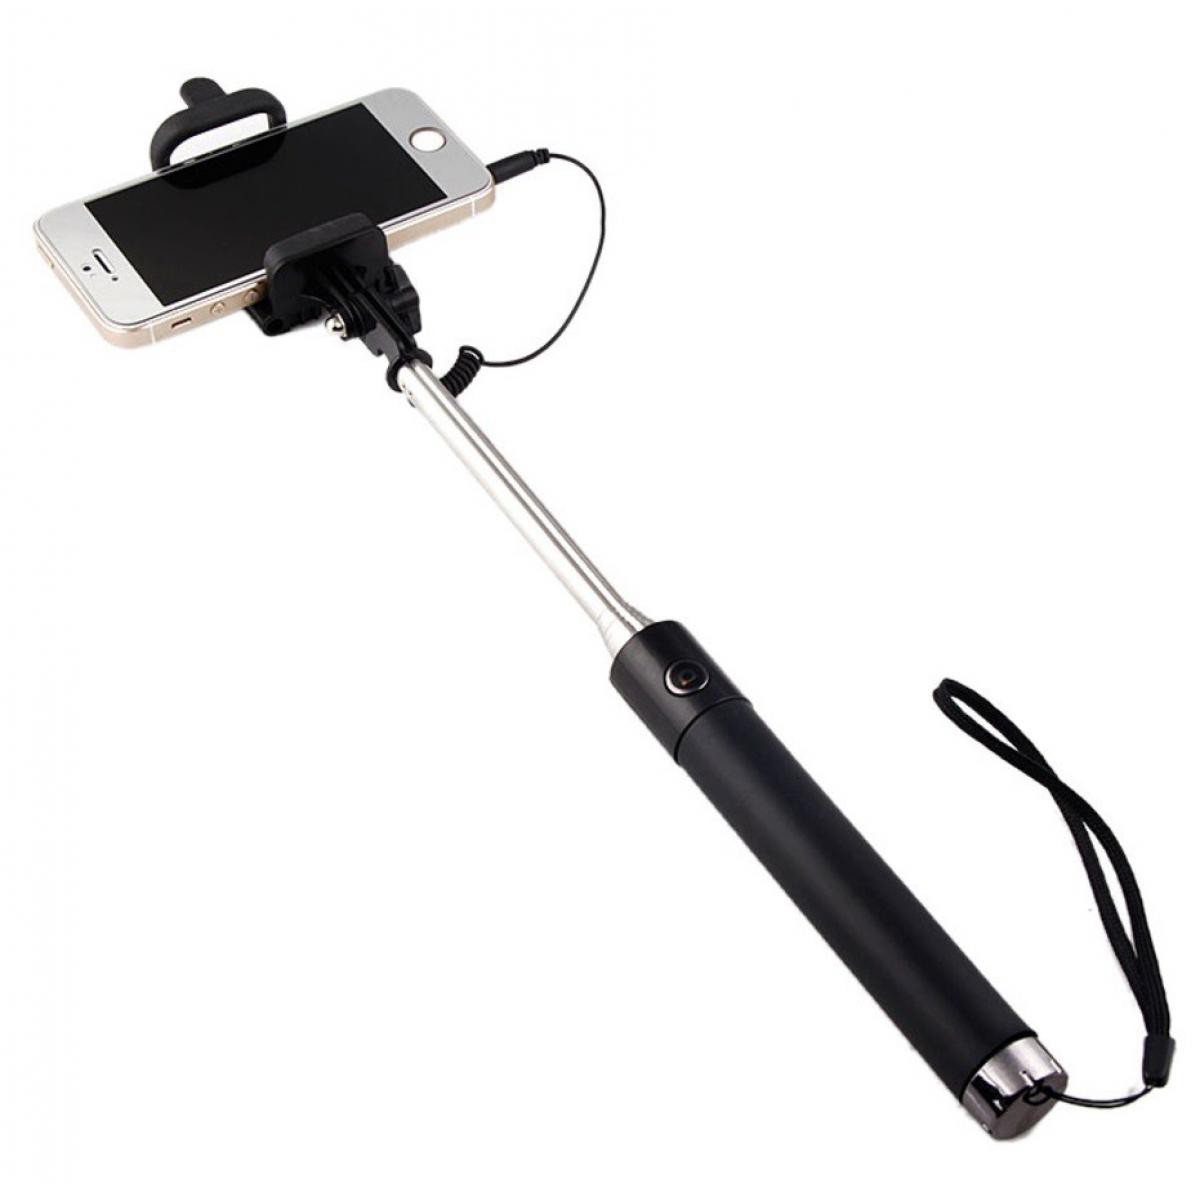 Shot - Perche Selfie Metal pour IPHONE 11 Pro APPLE avec Cable Jack Selfie Stick IOS Reglable Bouton Photo (NOIR) - Autres accessoires smartphone